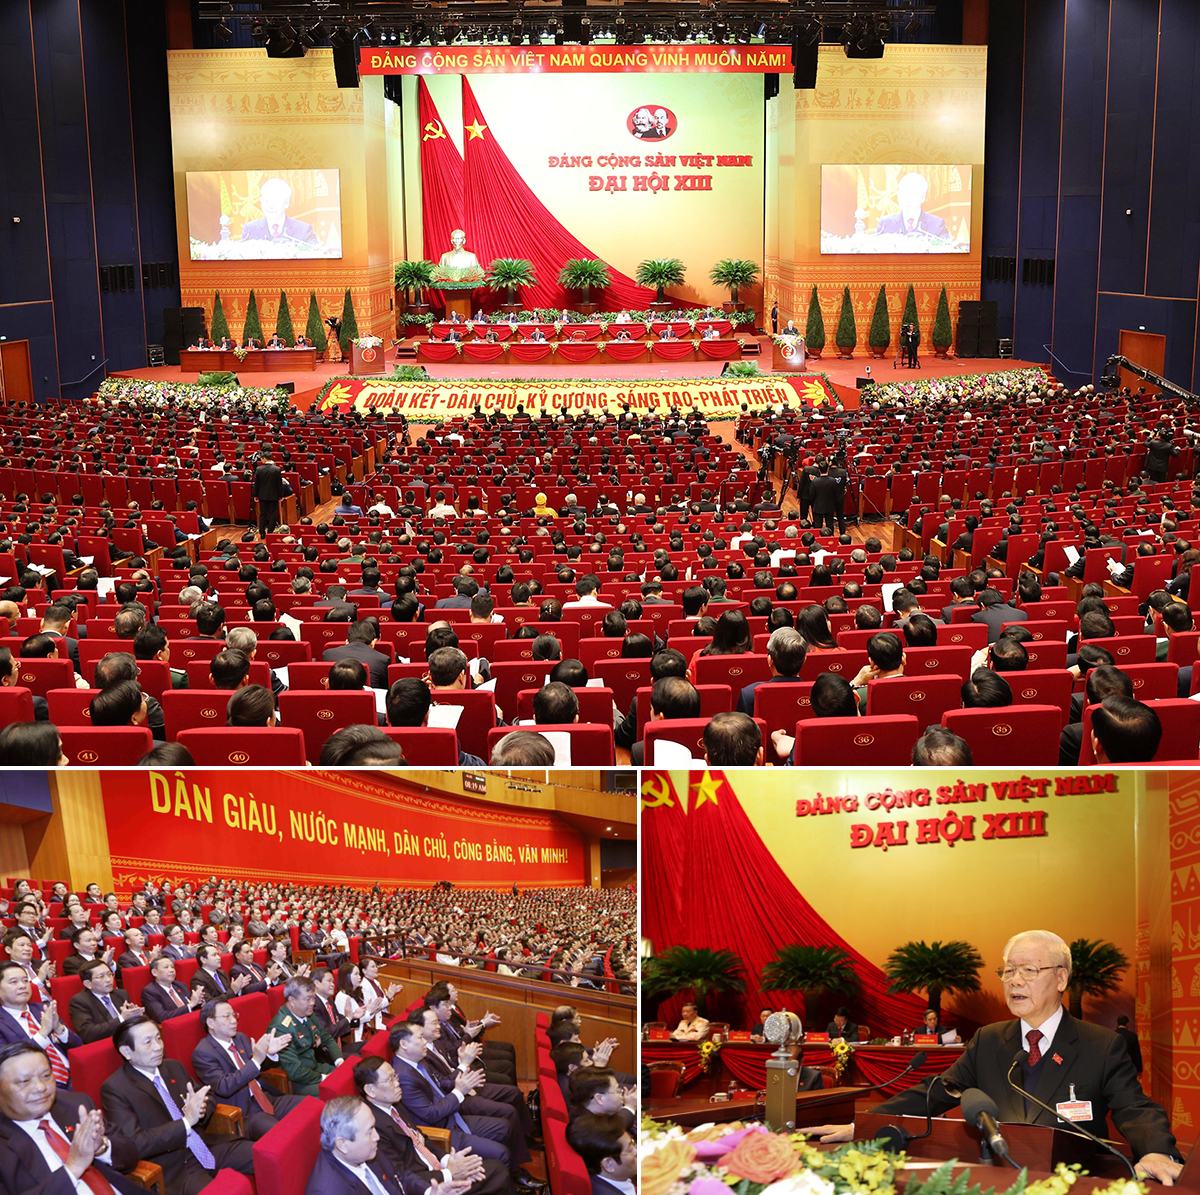 Đại hội Đại biểu toàn quốc lần thứ XIII của Đảng Cộng sản Việt Nam diễn ra từ ngày 26/1 đến ngày 1/2/2021.